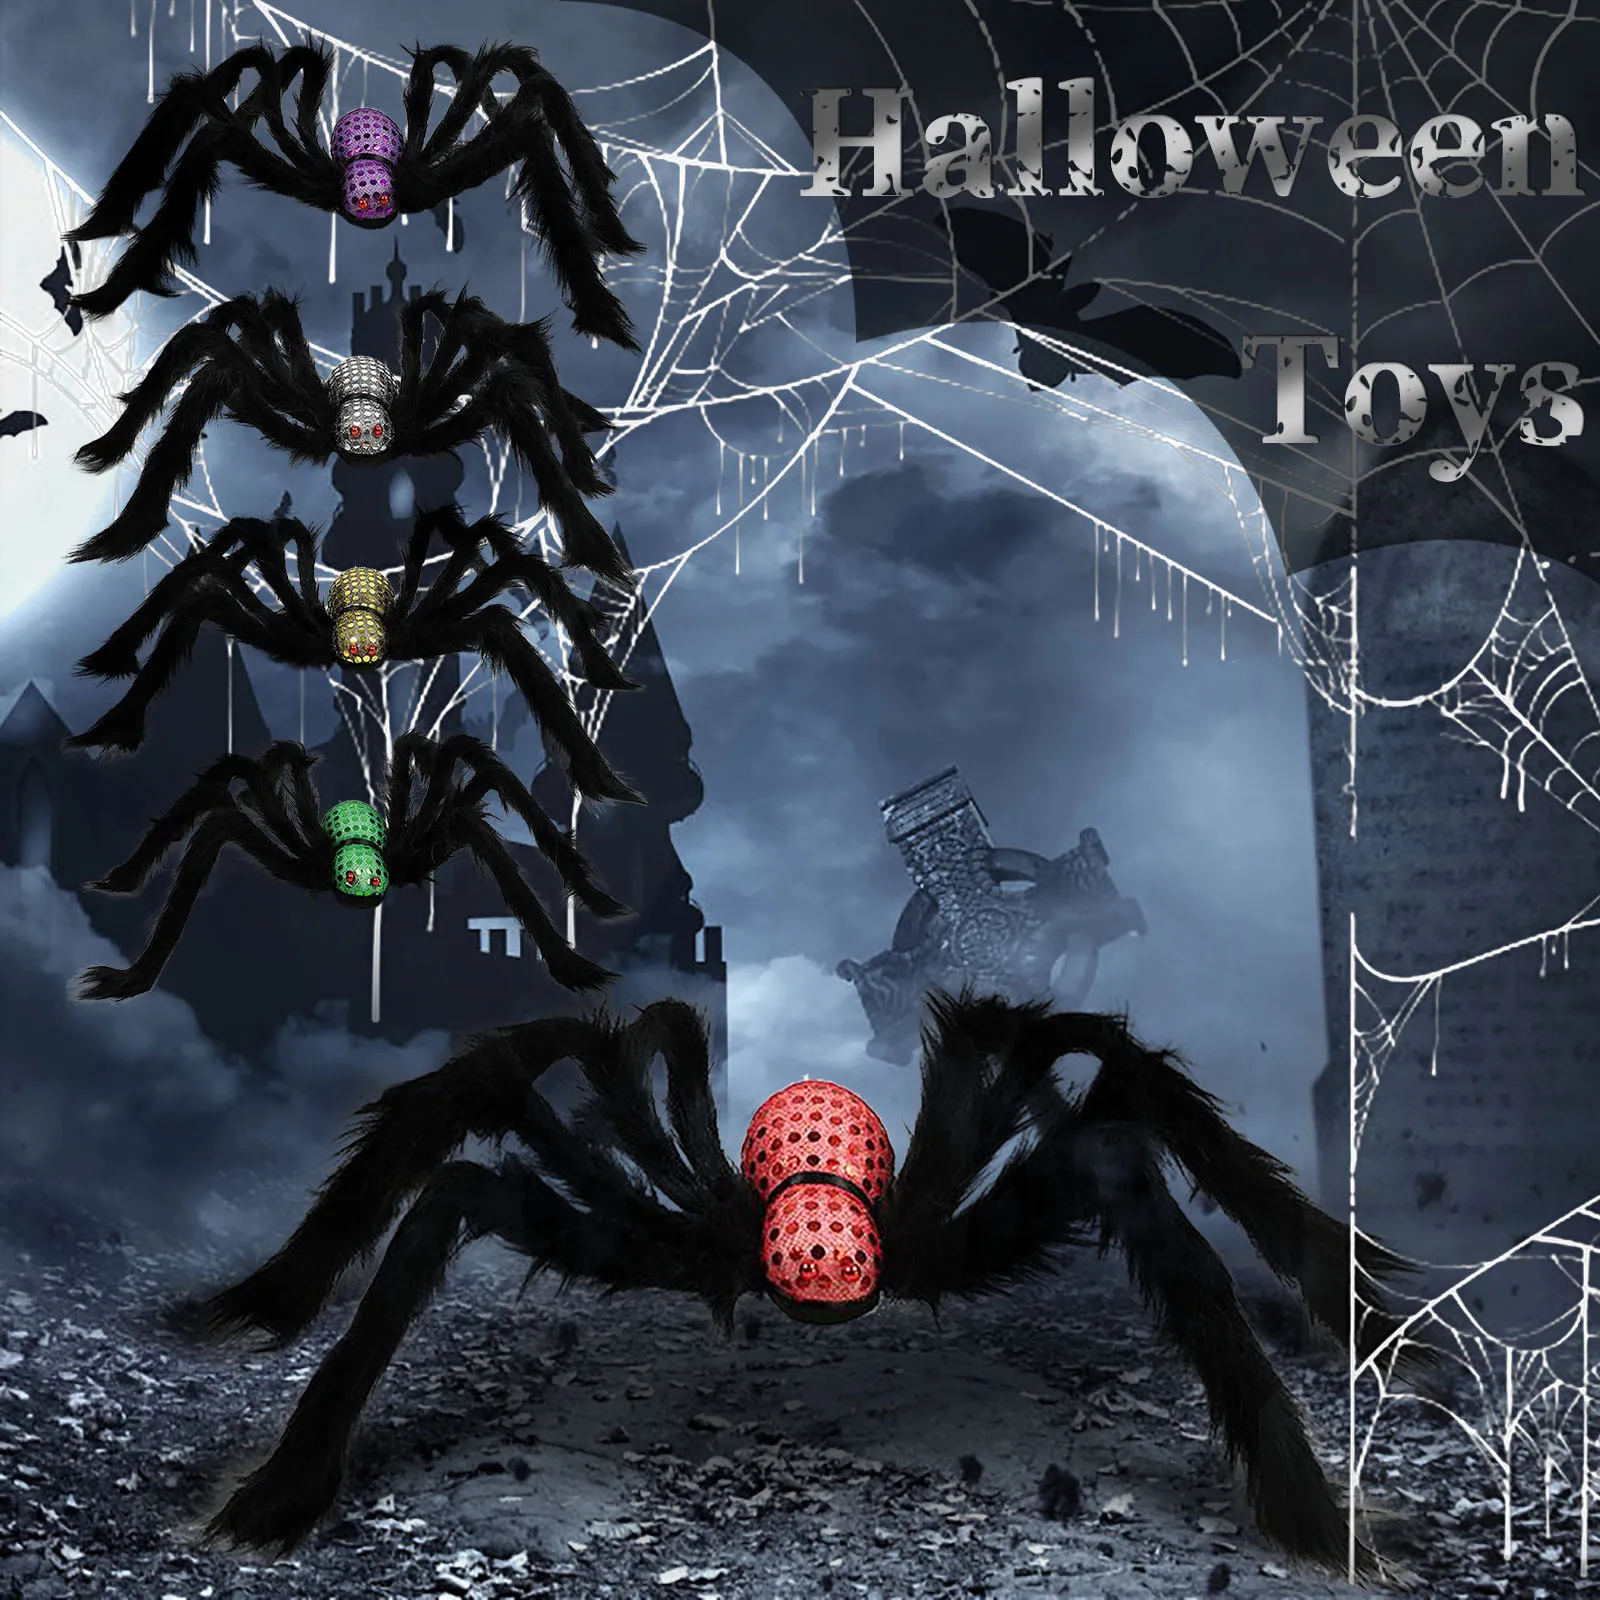 

Искусственный паук 75 см, украшение на Хэллоуин для дома, бара, дом с привидениями, паук на Хэллоуин, искусственный паук, Шелковый реквизит 2021